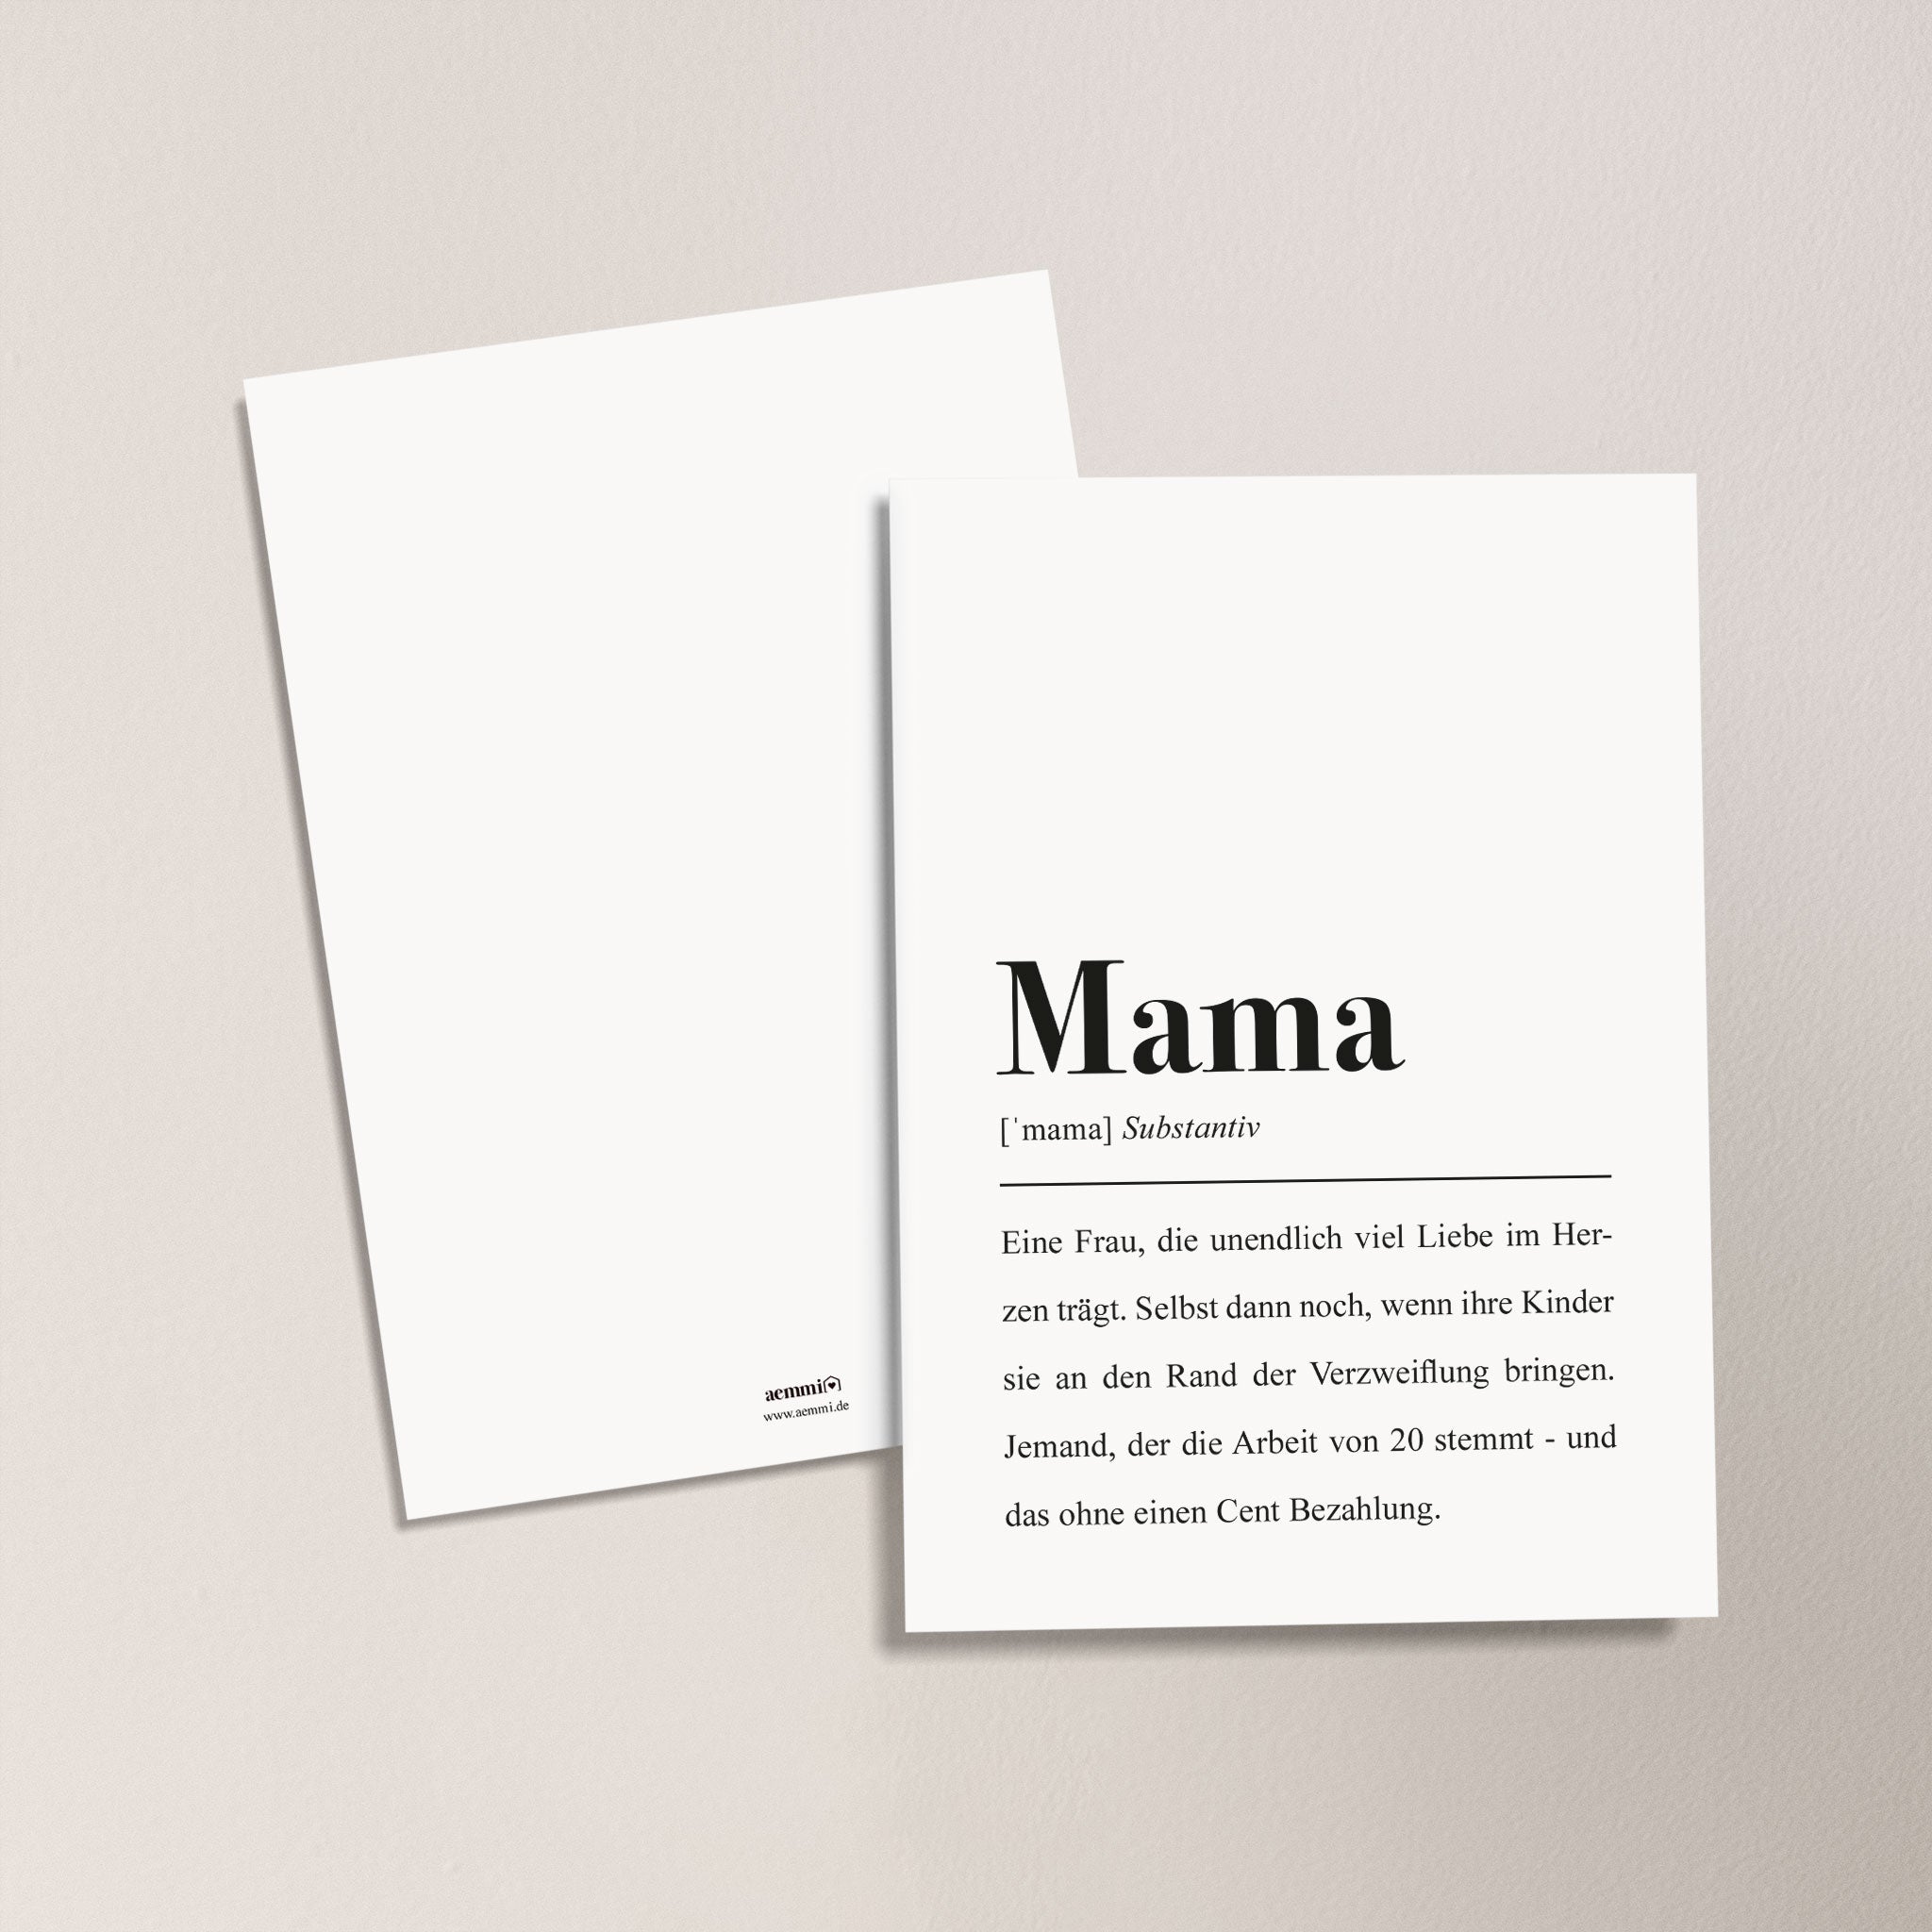 Idee für Muttertagsgeschenk: Mama ist die beste